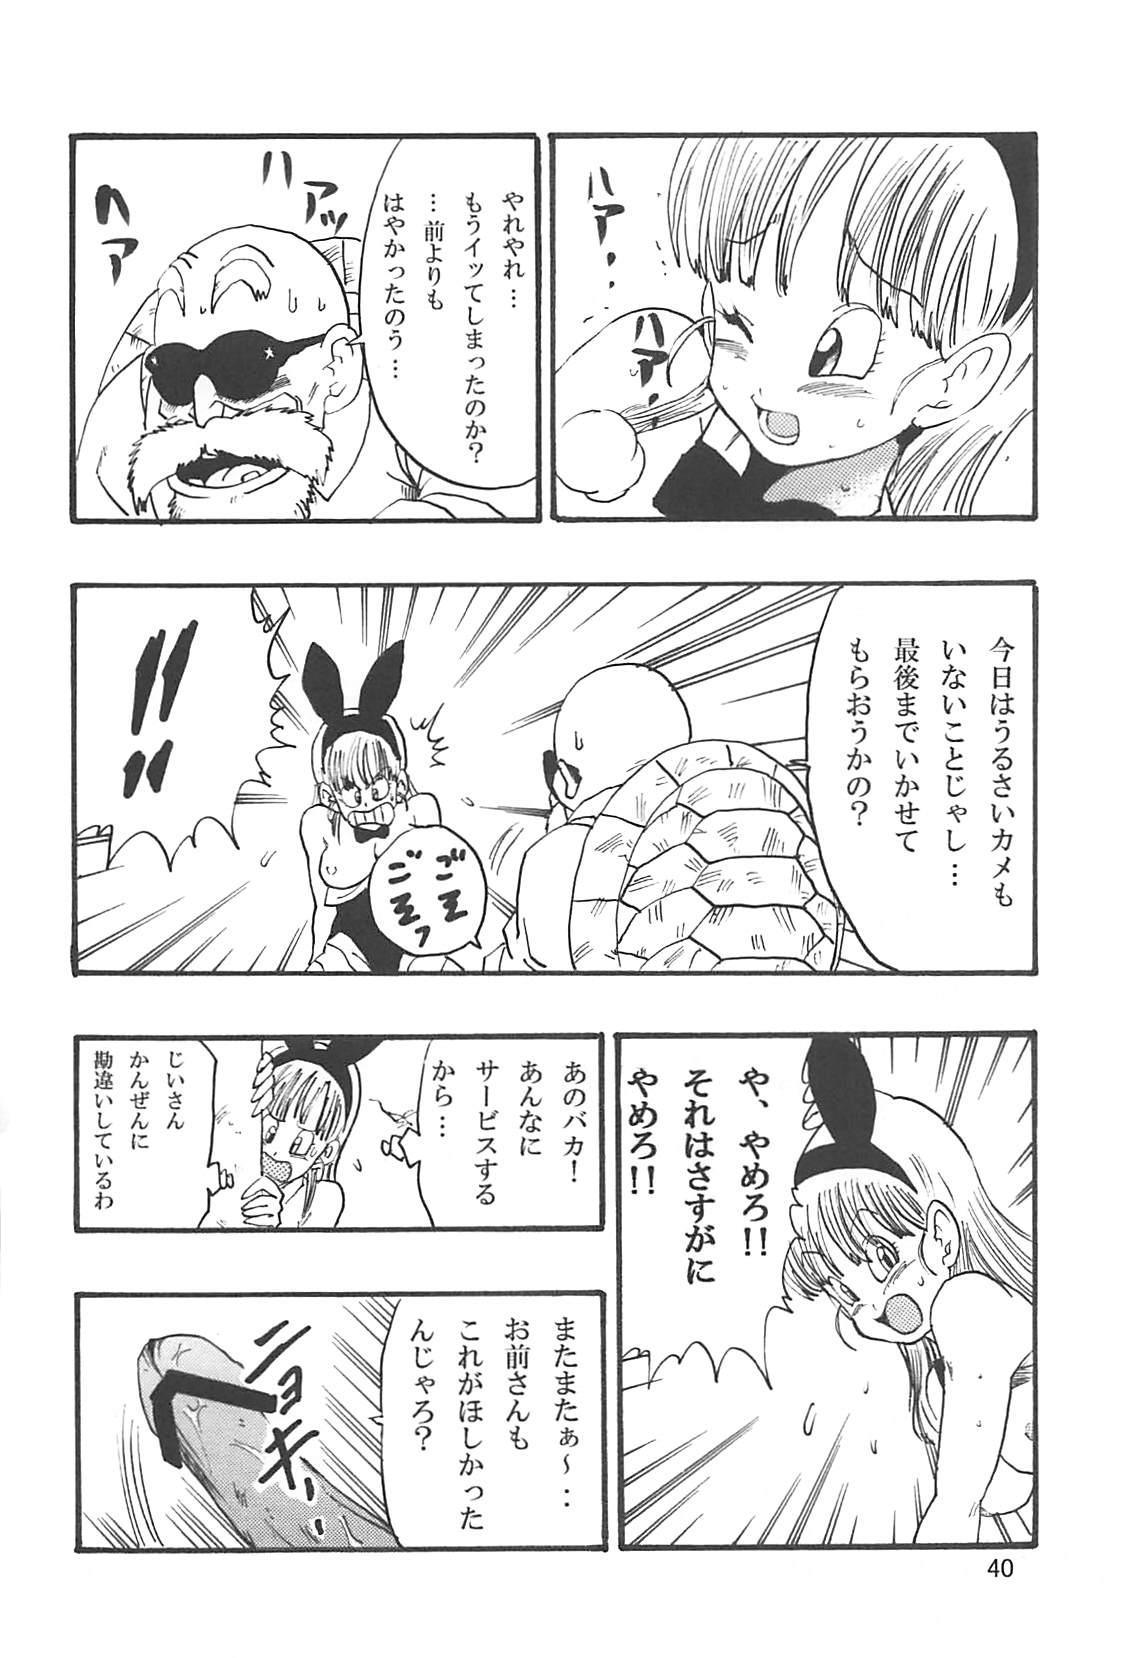 Dragon Ball Episode of Bulma 1 Fukkokuban 40